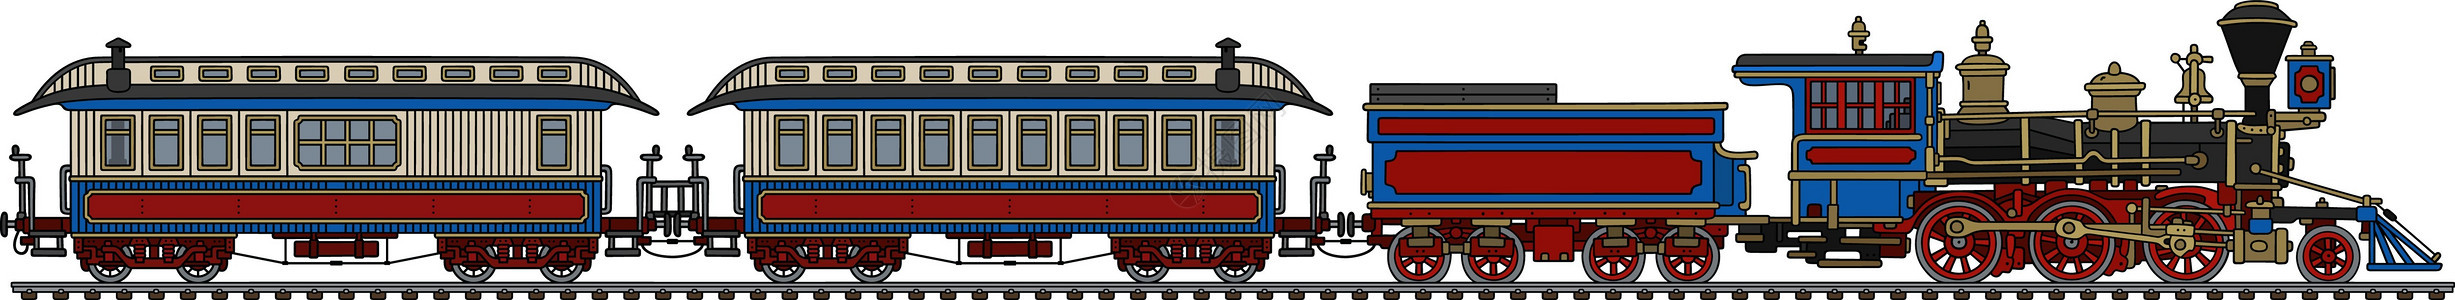 老式美国蒸汽火车蓝色引擎机器插图运输铁路车辆乘客红色荒野图片